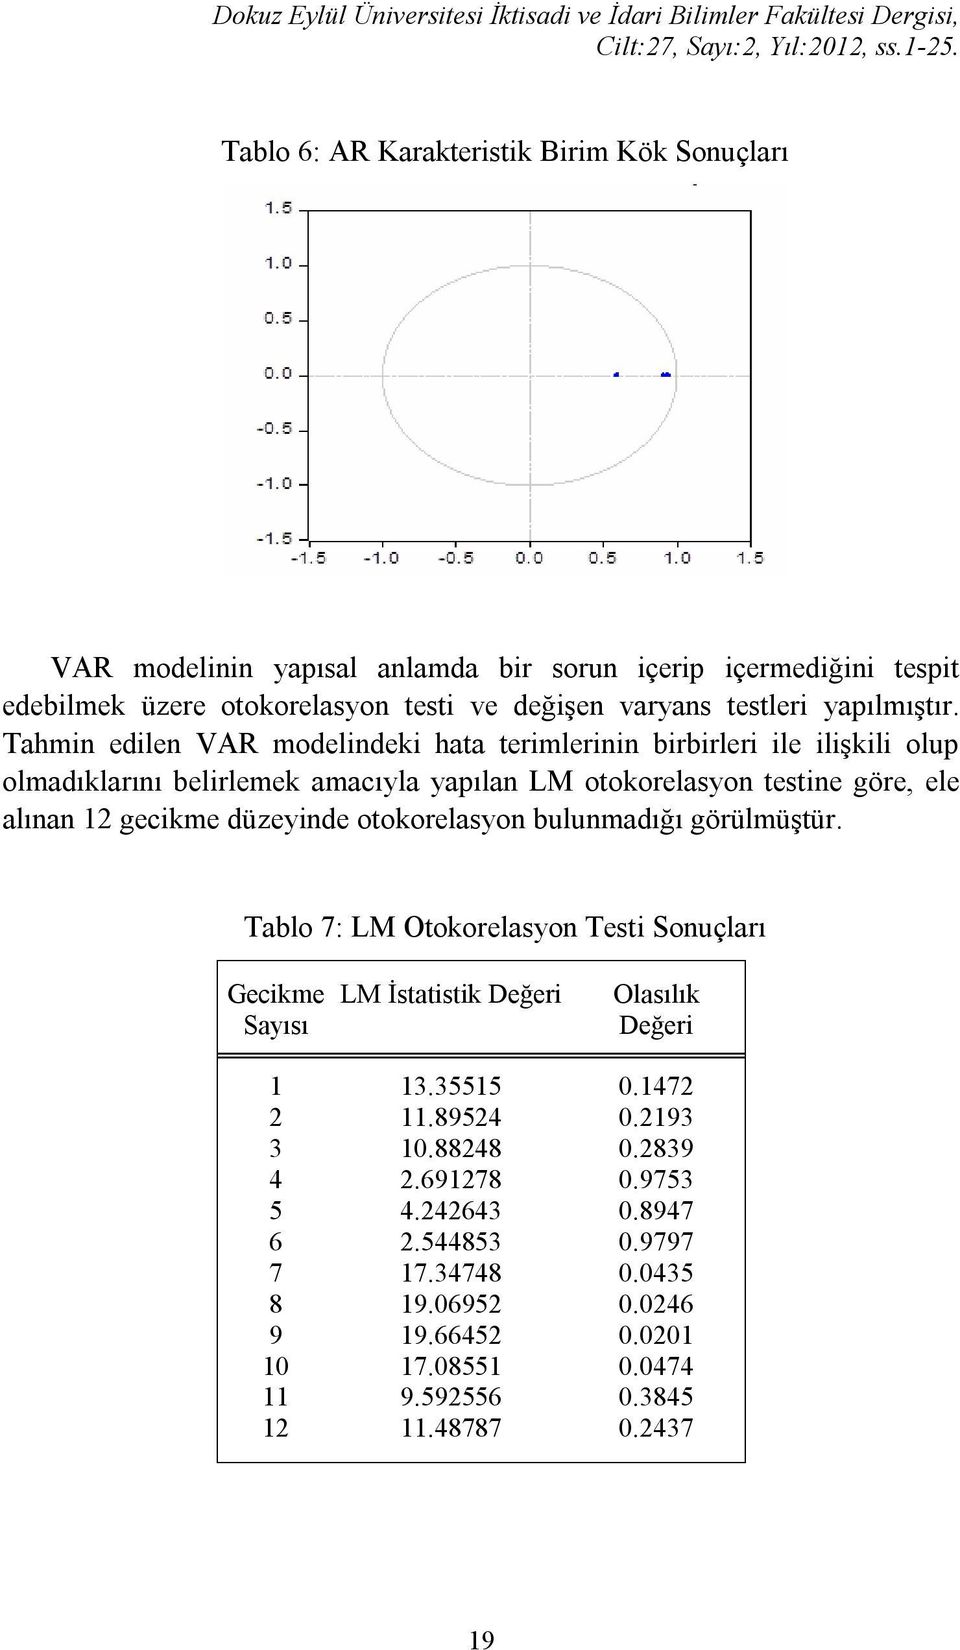 Tahmin edilen VAR modelindeki hata terimlerinin birbirleri ile ilişkili olup olmadıklarını belirlemek amacıyla yapılan LM otokorelasyon testine göre, ele alınan 12 gecikme düzeyinde otokorelasyon